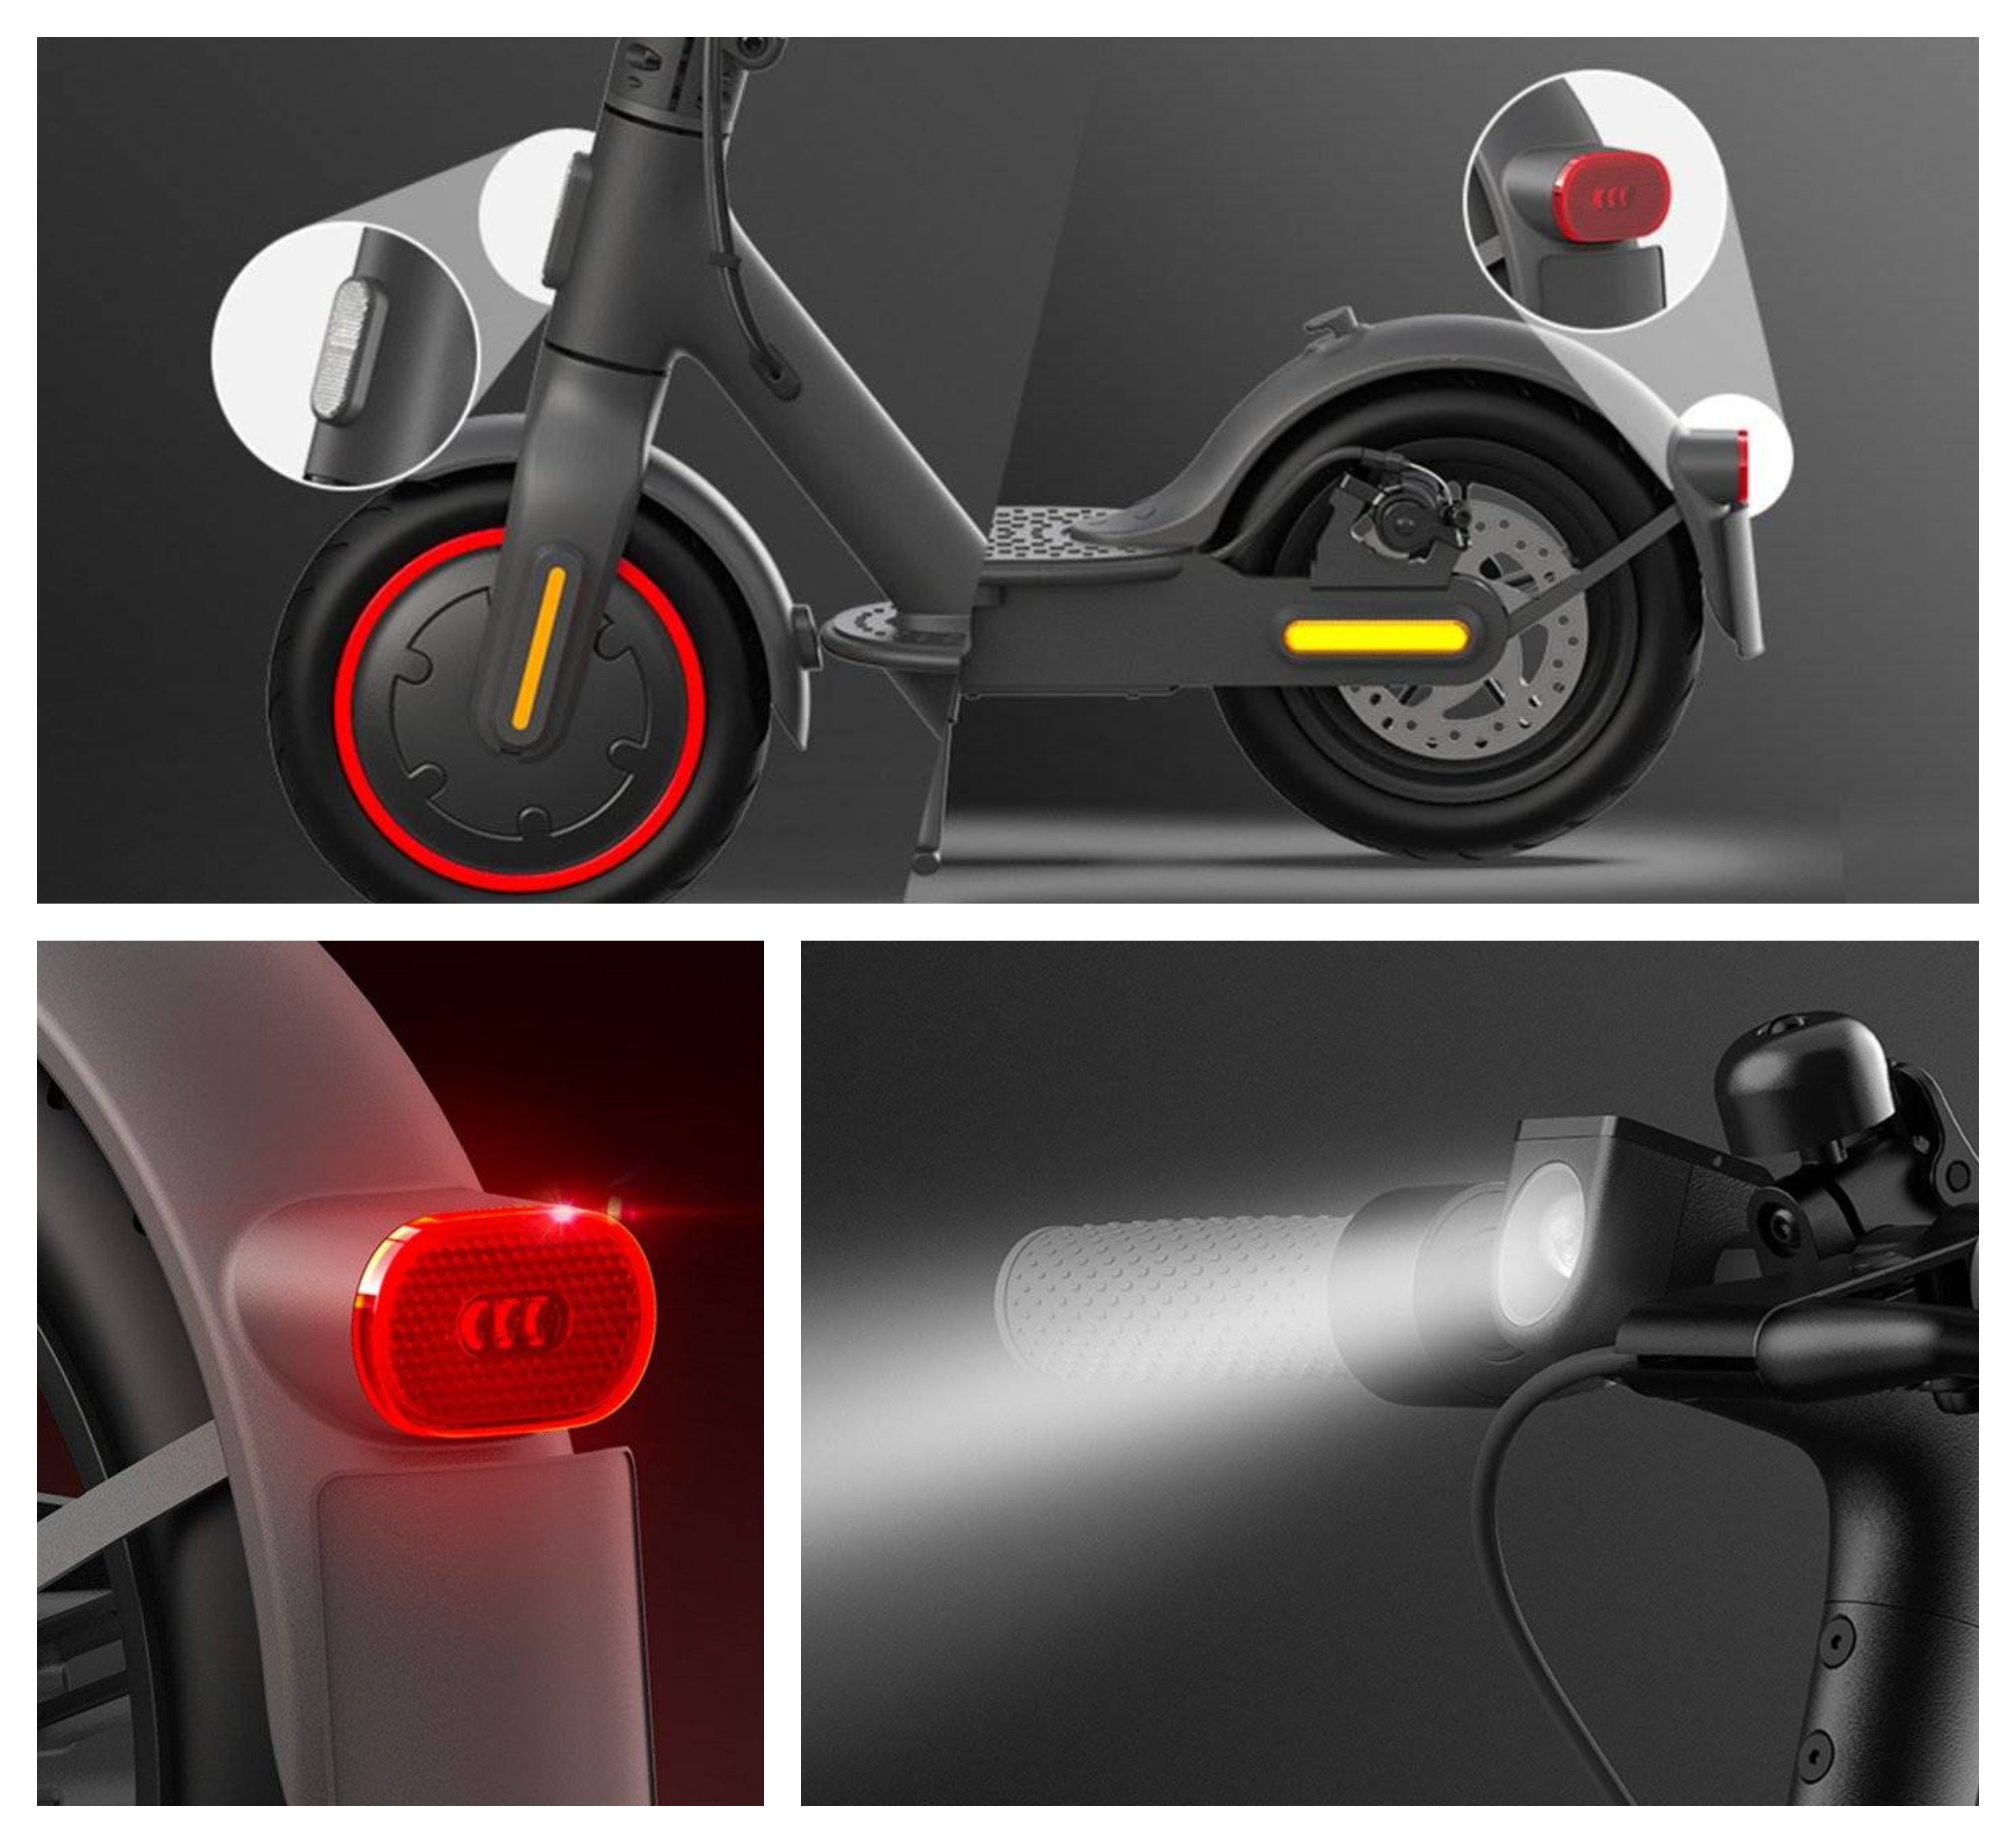 Elektrokolobežka Xiaomi Mi Electric Scooter Pro 2 má predné a zadné svetlá aj bočné reflexné prvky, ktoré zvyšujú bezpečnosť jazdy na maximum.